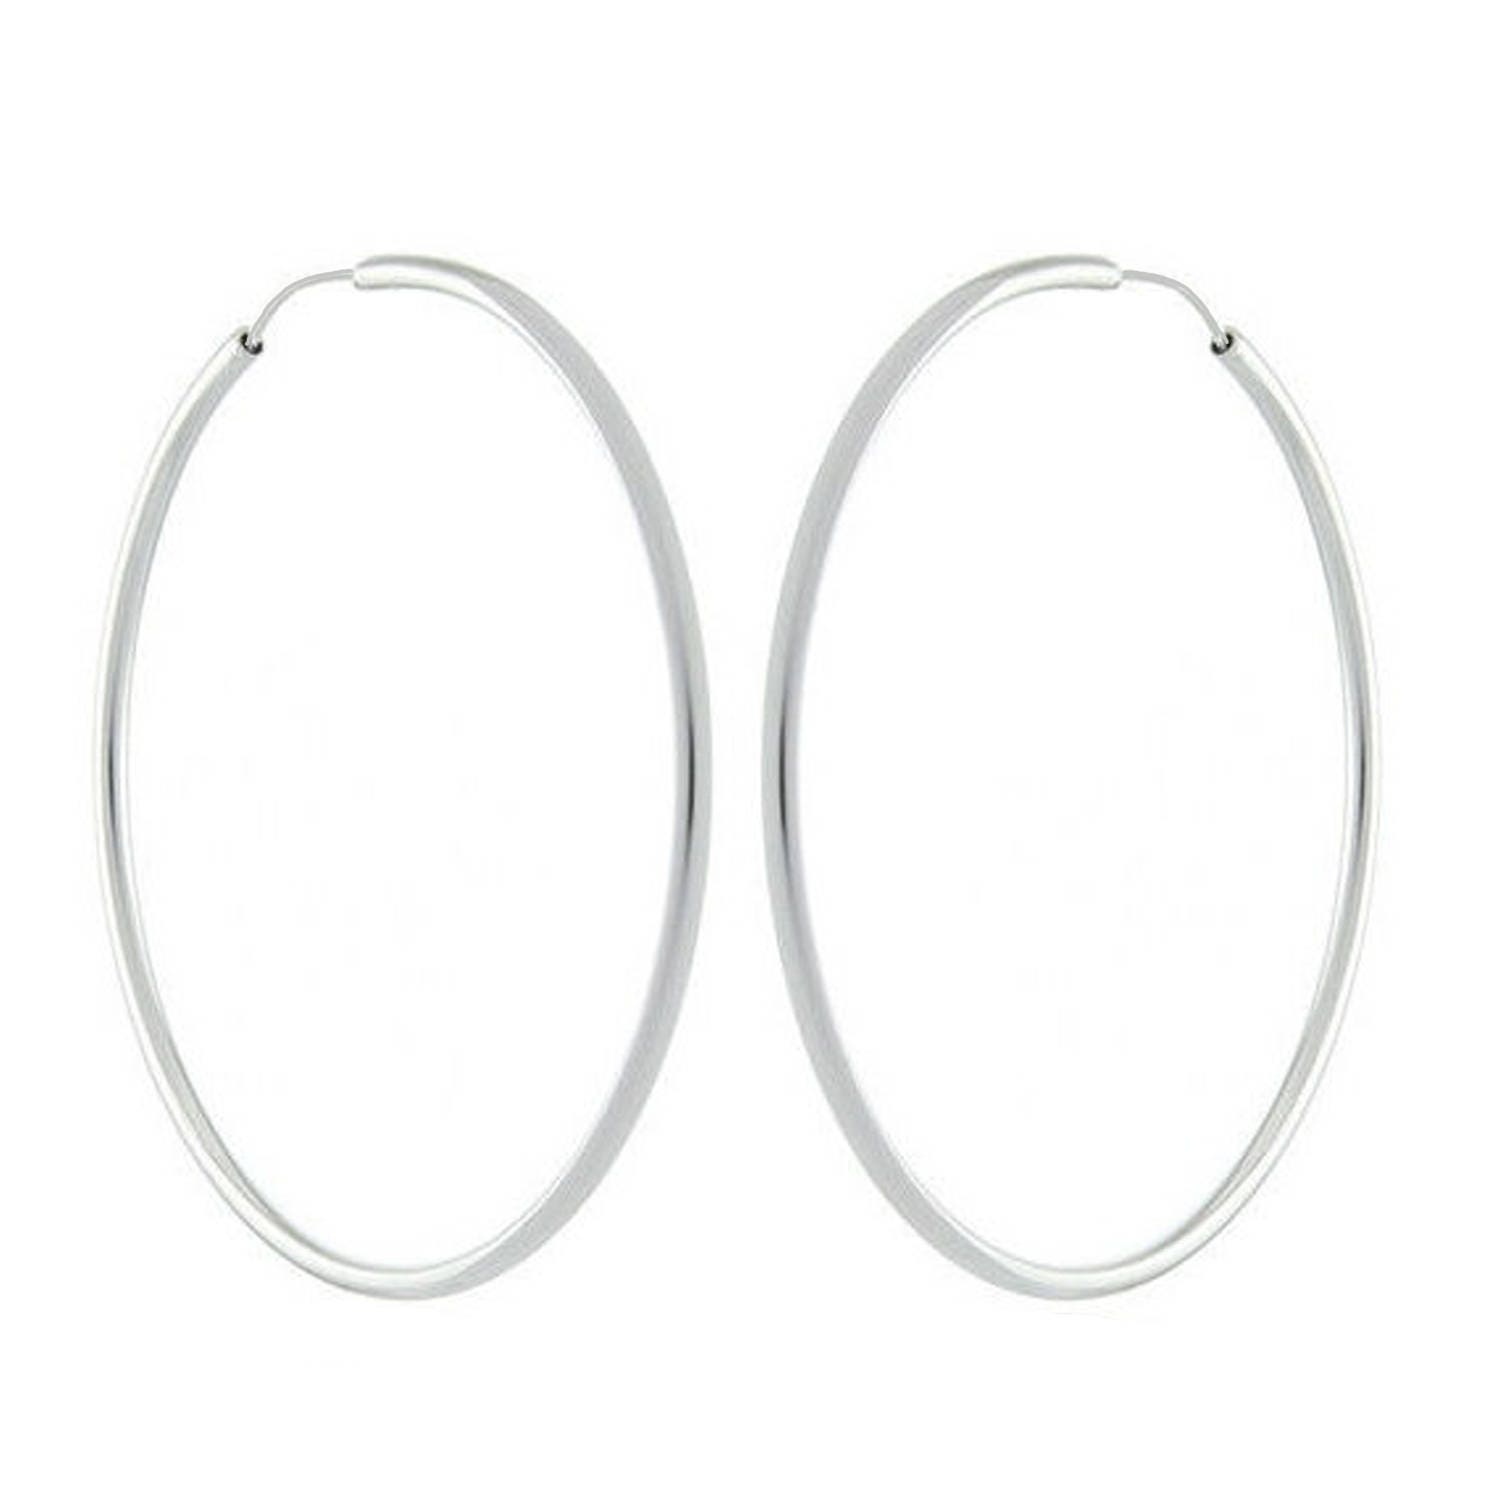 Share more than 153 ladies silver hoop earrings best - esthdonghoadian